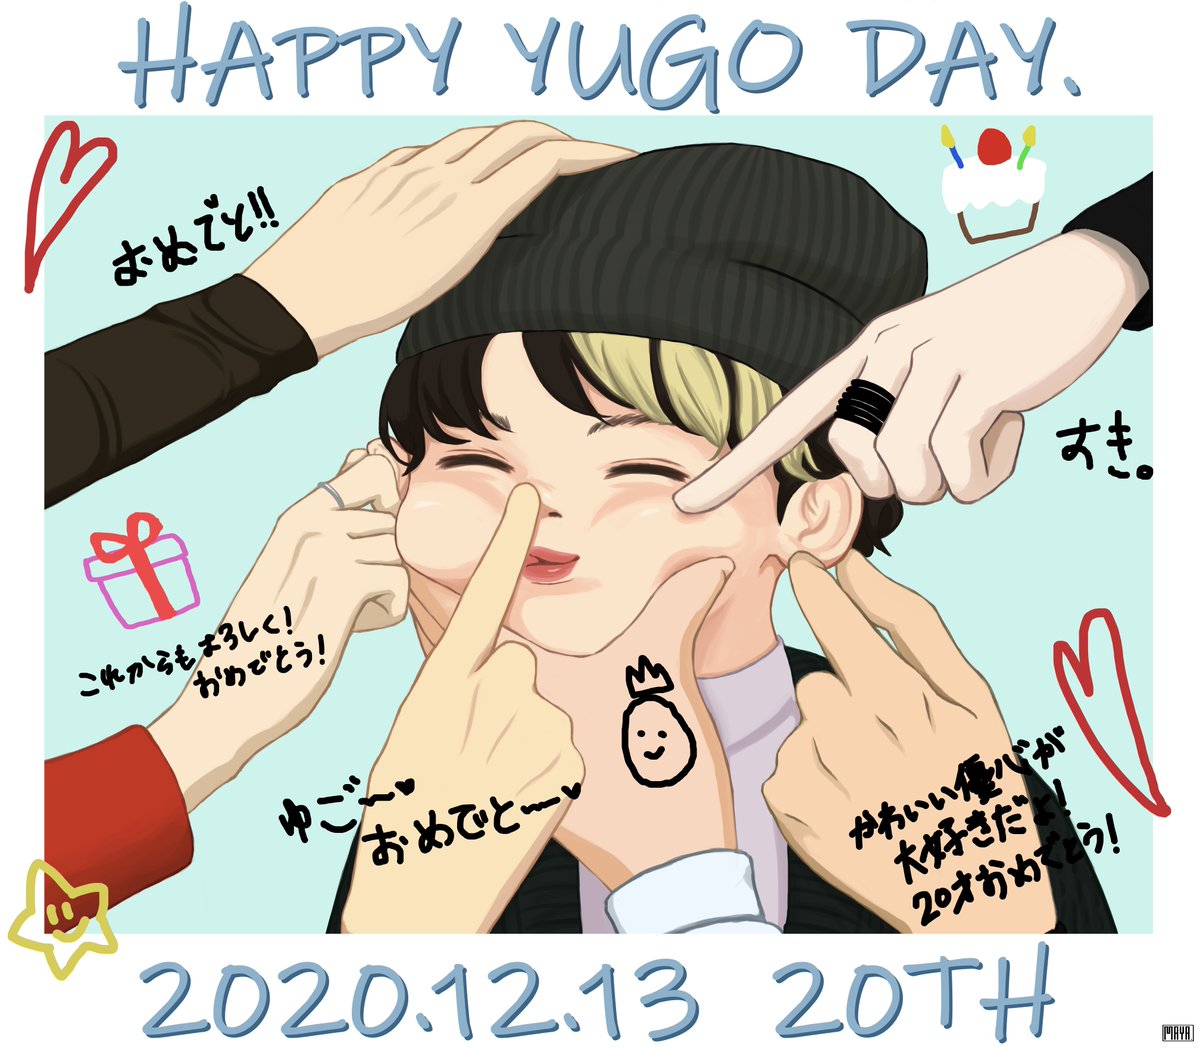 【YUGO】- Happy 20th birthday -

#HappyYugoDay
#ハタチの優心と見る景色
#ORβIT
#YUGO